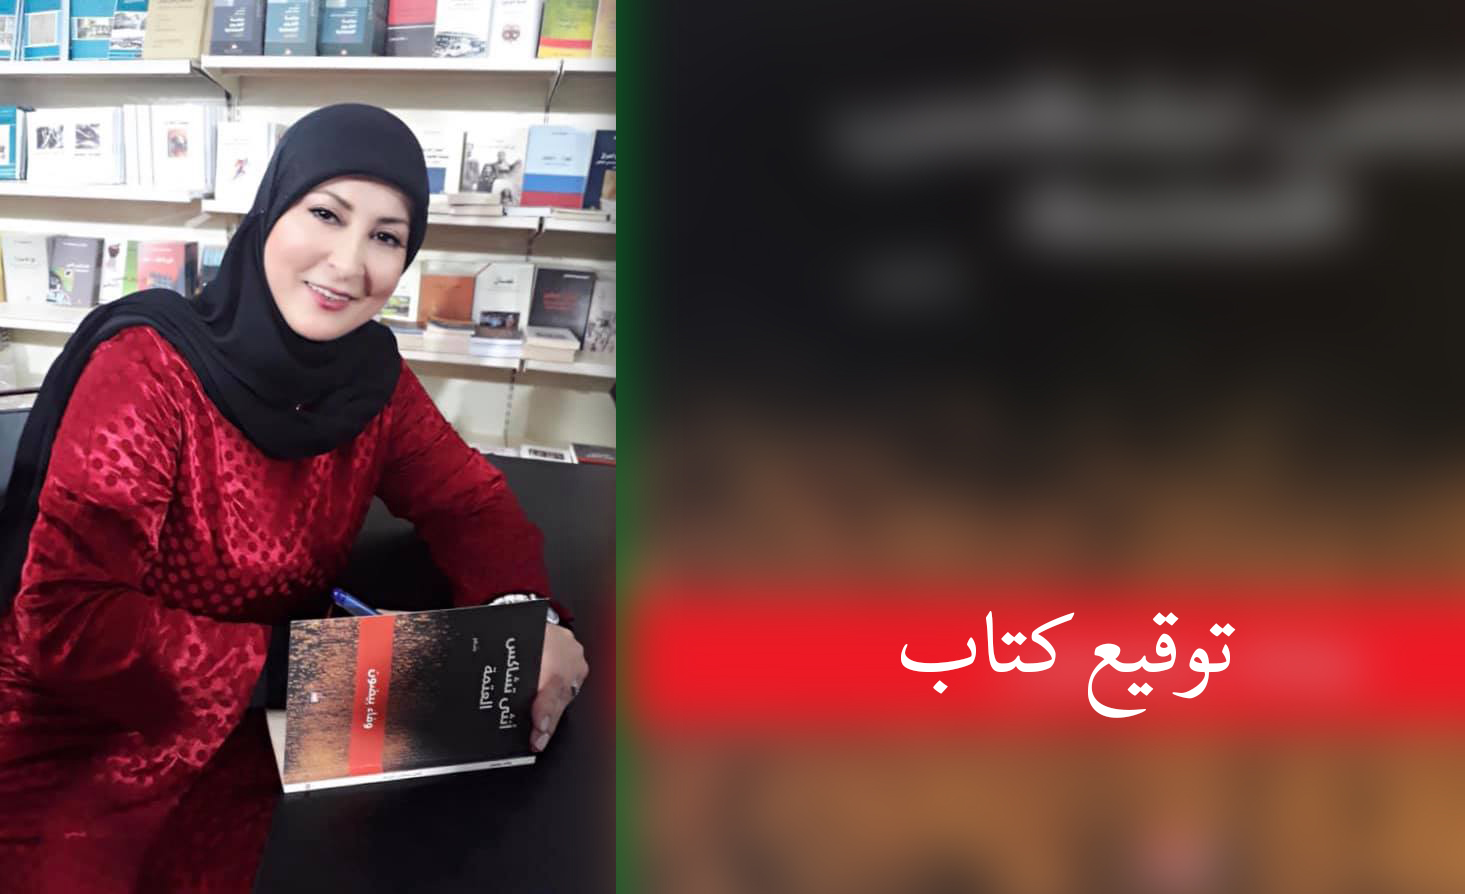 دعوة لحضور حفل توقيع كتاب الشاعرة وفاء بيضون في بنت جبيل